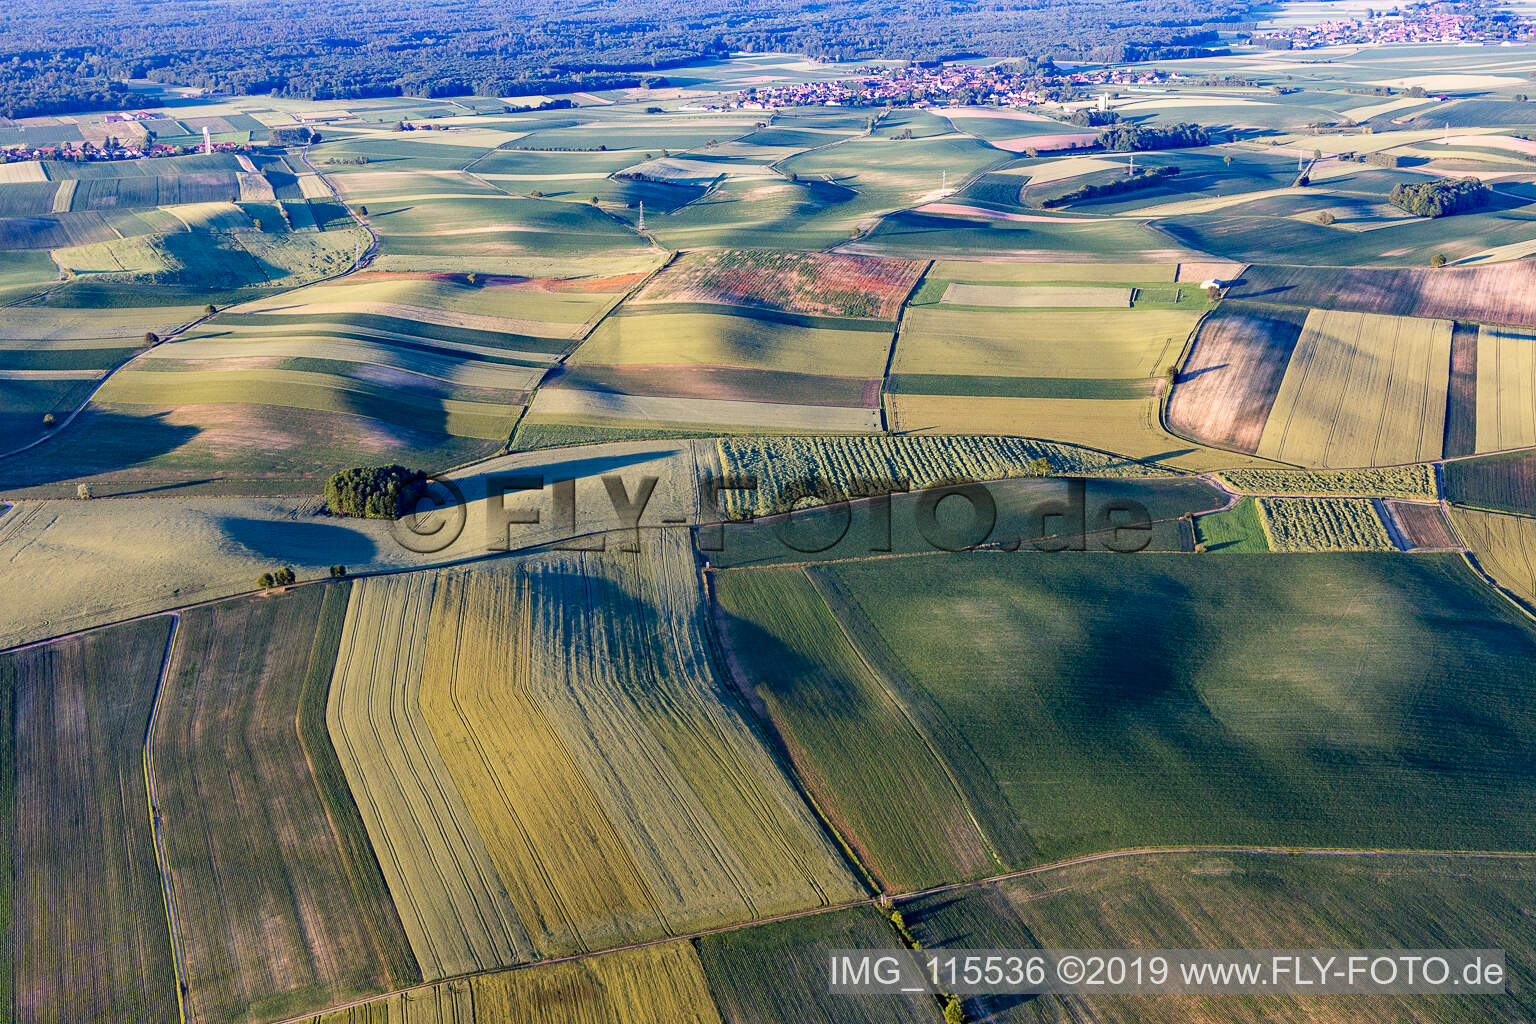 Seebach im Bundesland Bas-Rhin, Frankreich von der Drohne aus gesehen